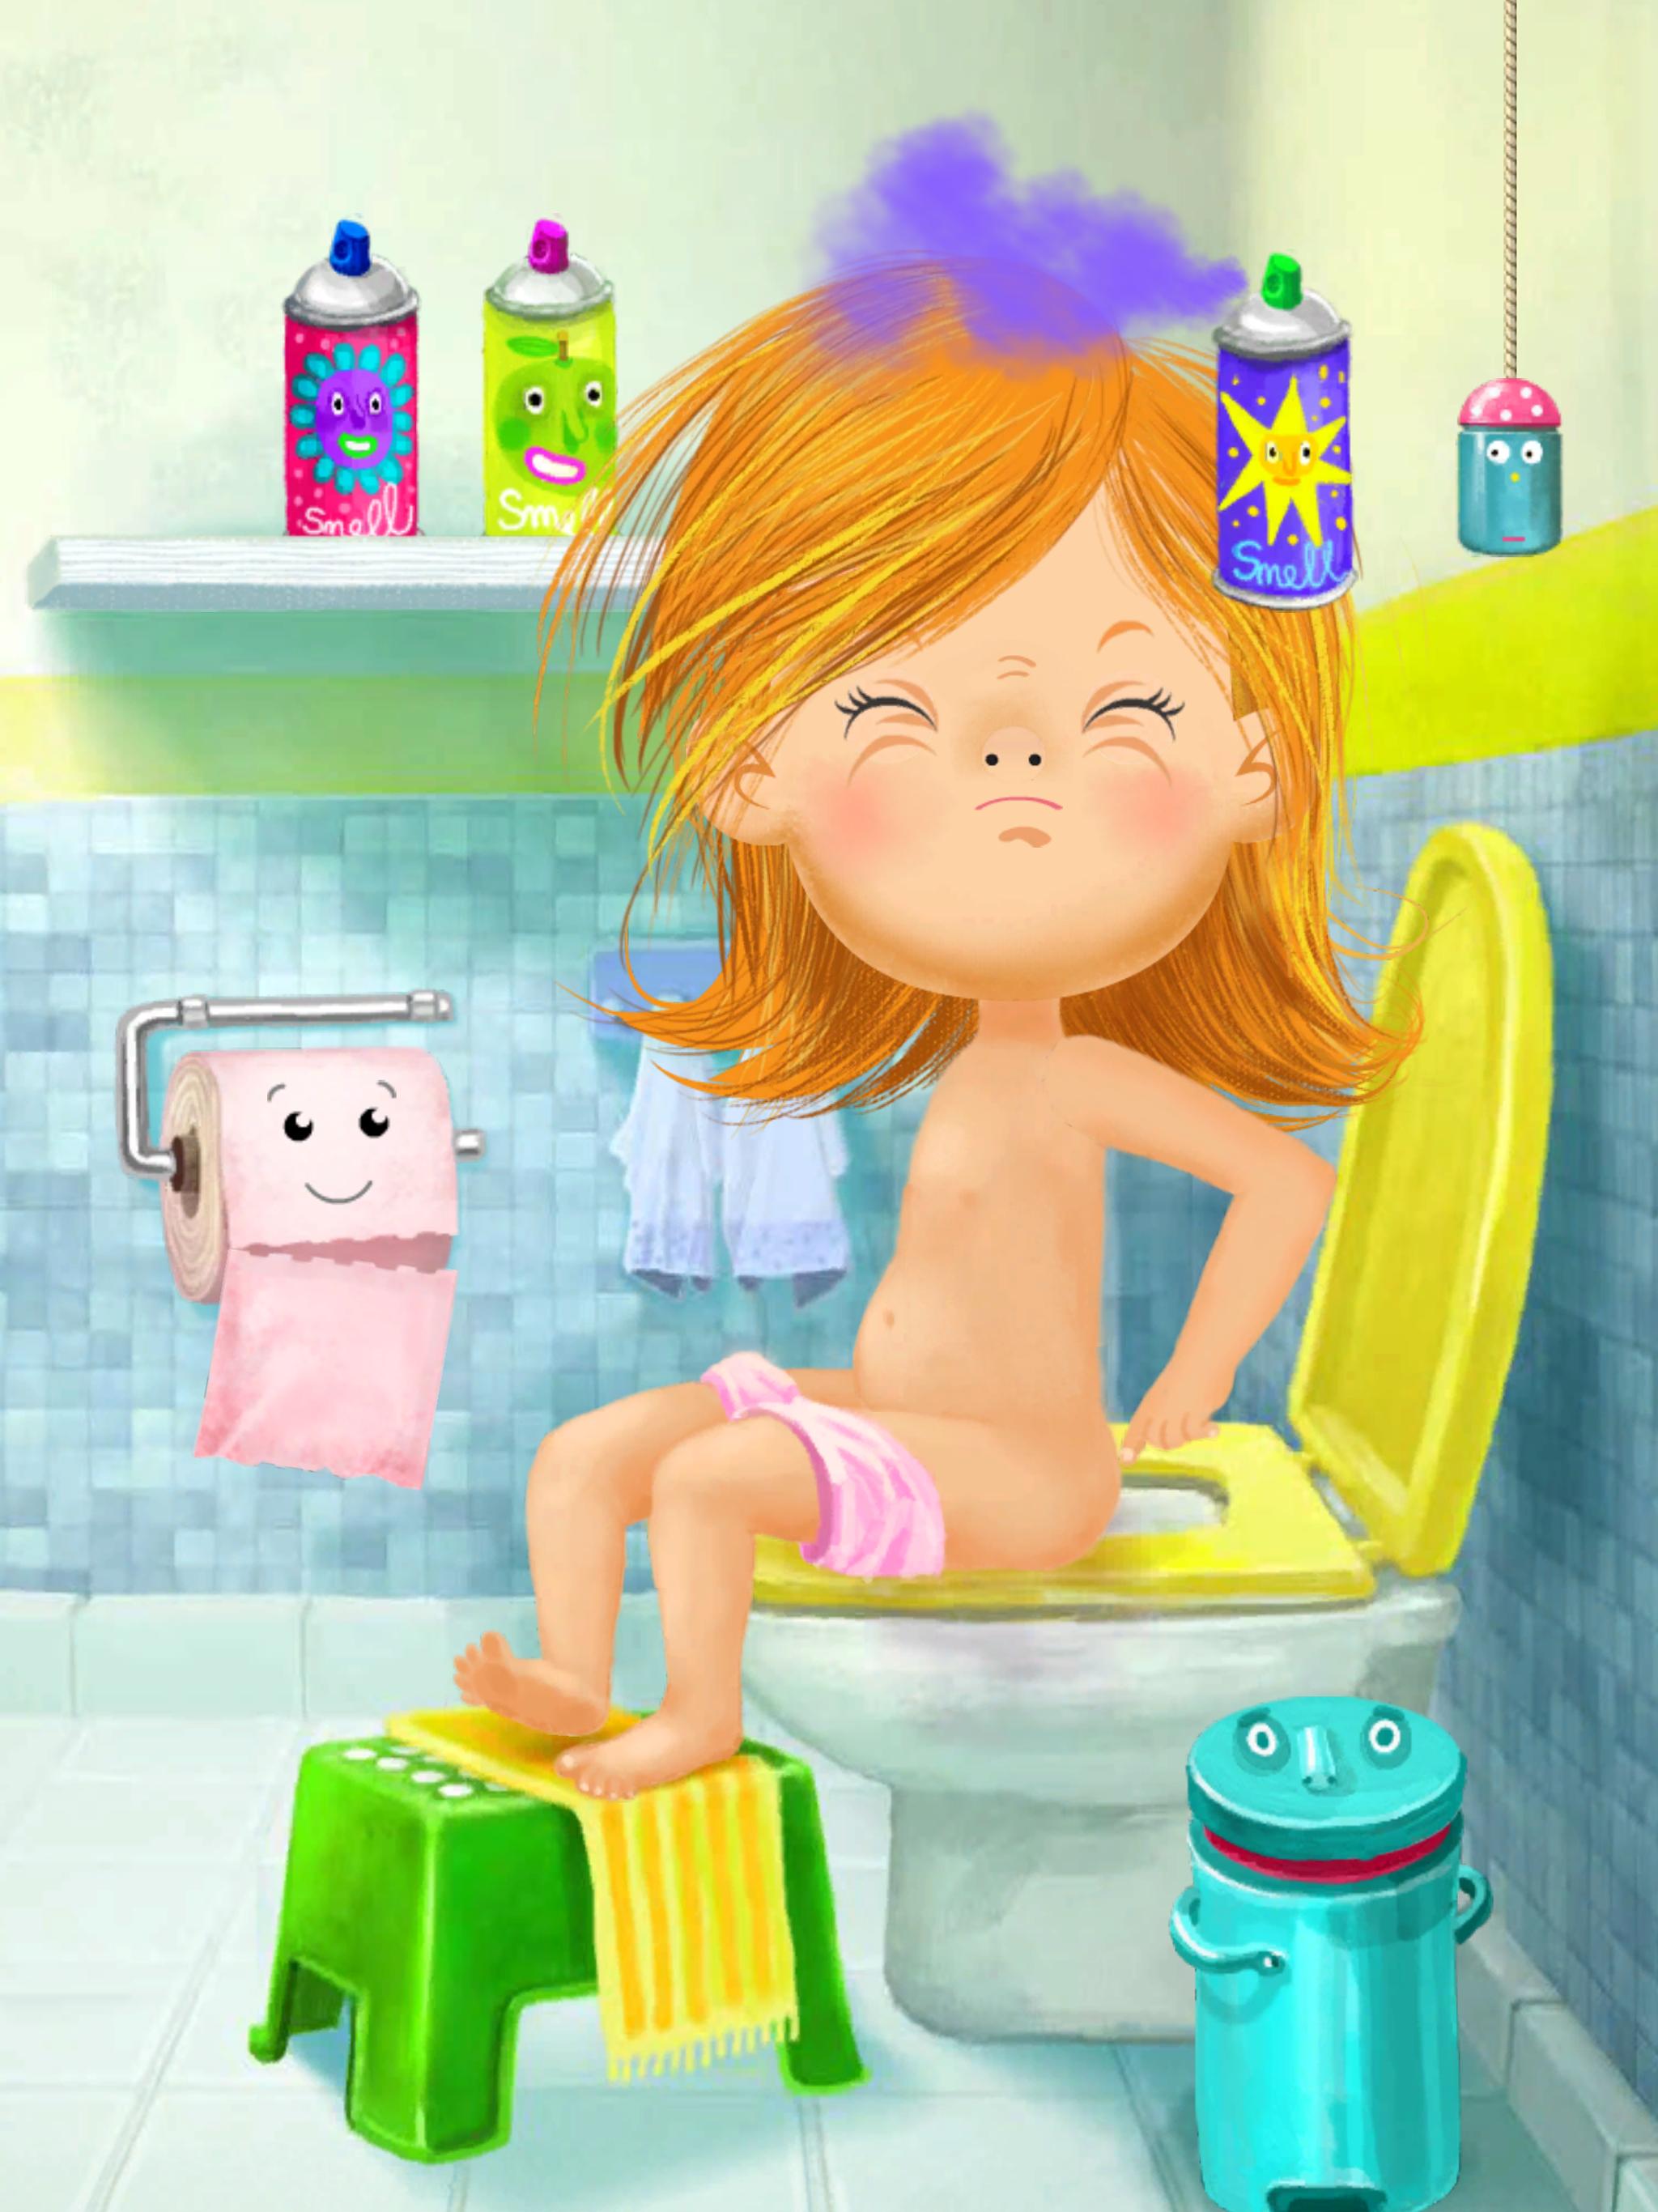 Картинка туалет девочек. Девочка на горшке. Гигиена в туалете. Девушка горшка. Девочка умывается.